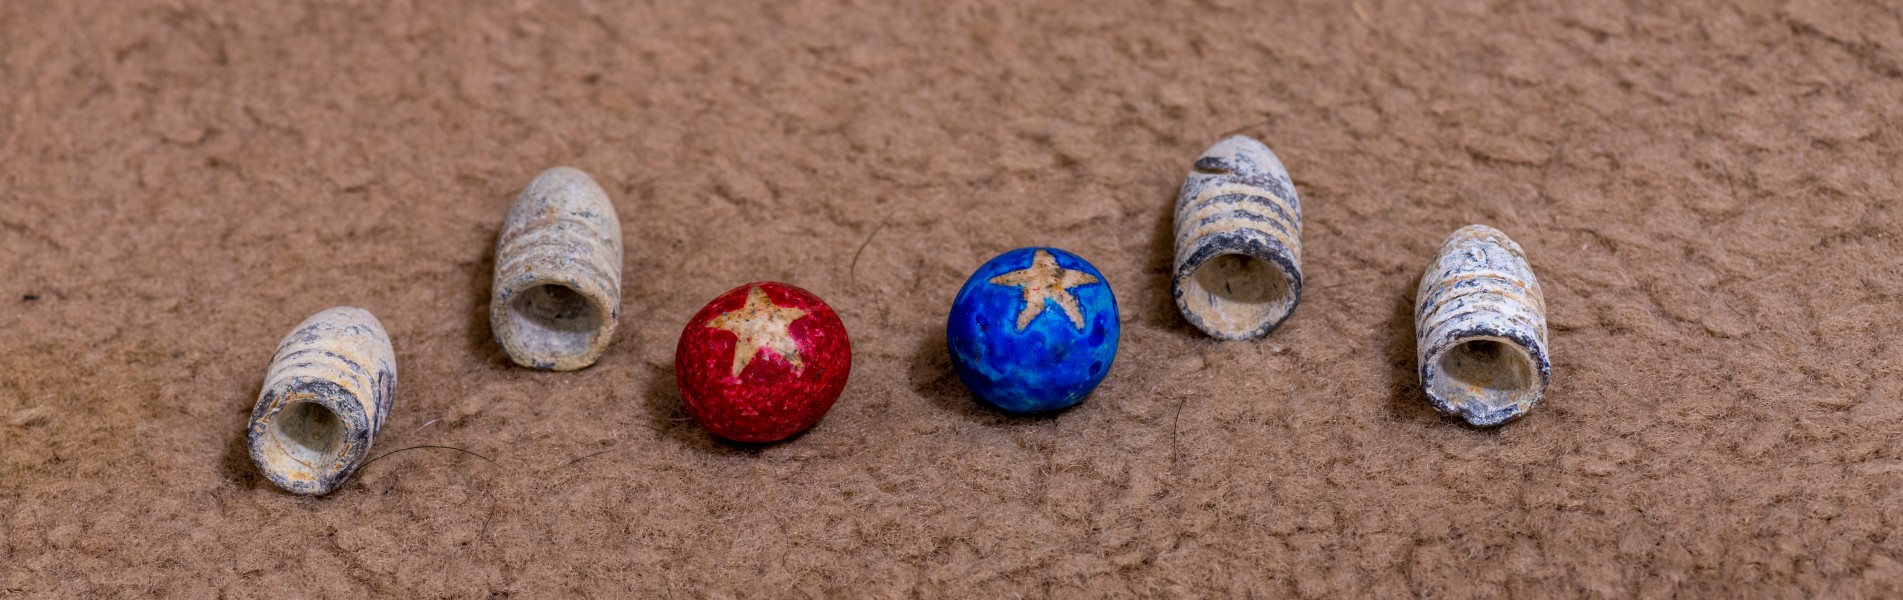 Civil War Minié ball and clay marbles 1